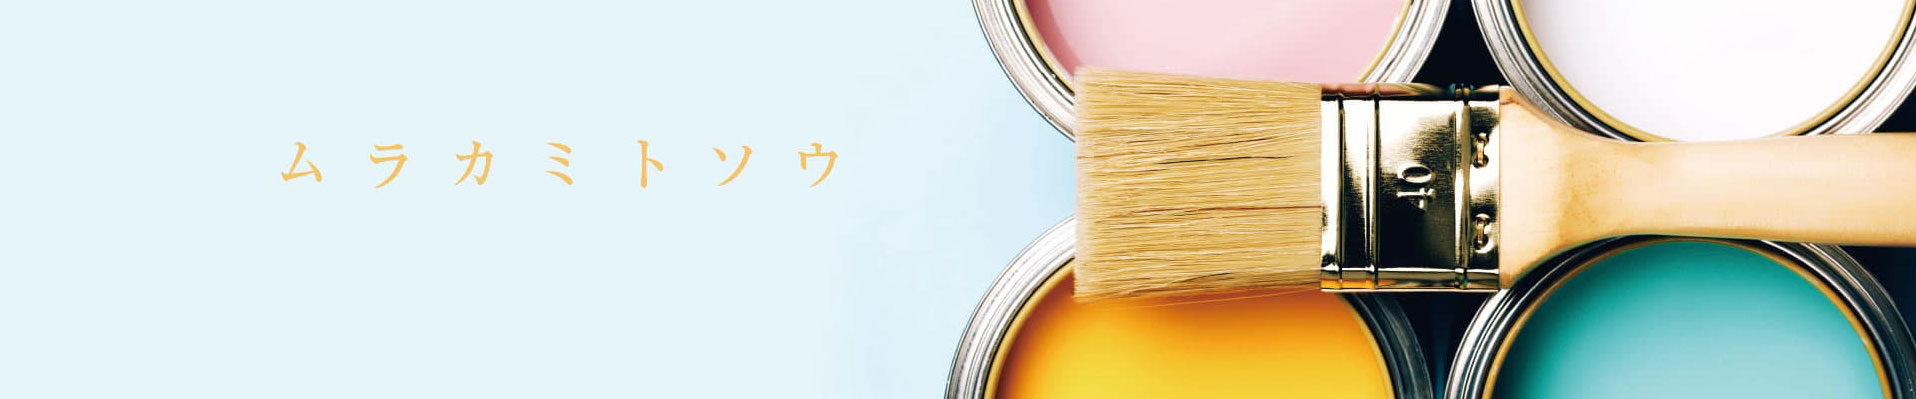 広島の職人直営店『Satis Select』への塗装工事サービスメニュー